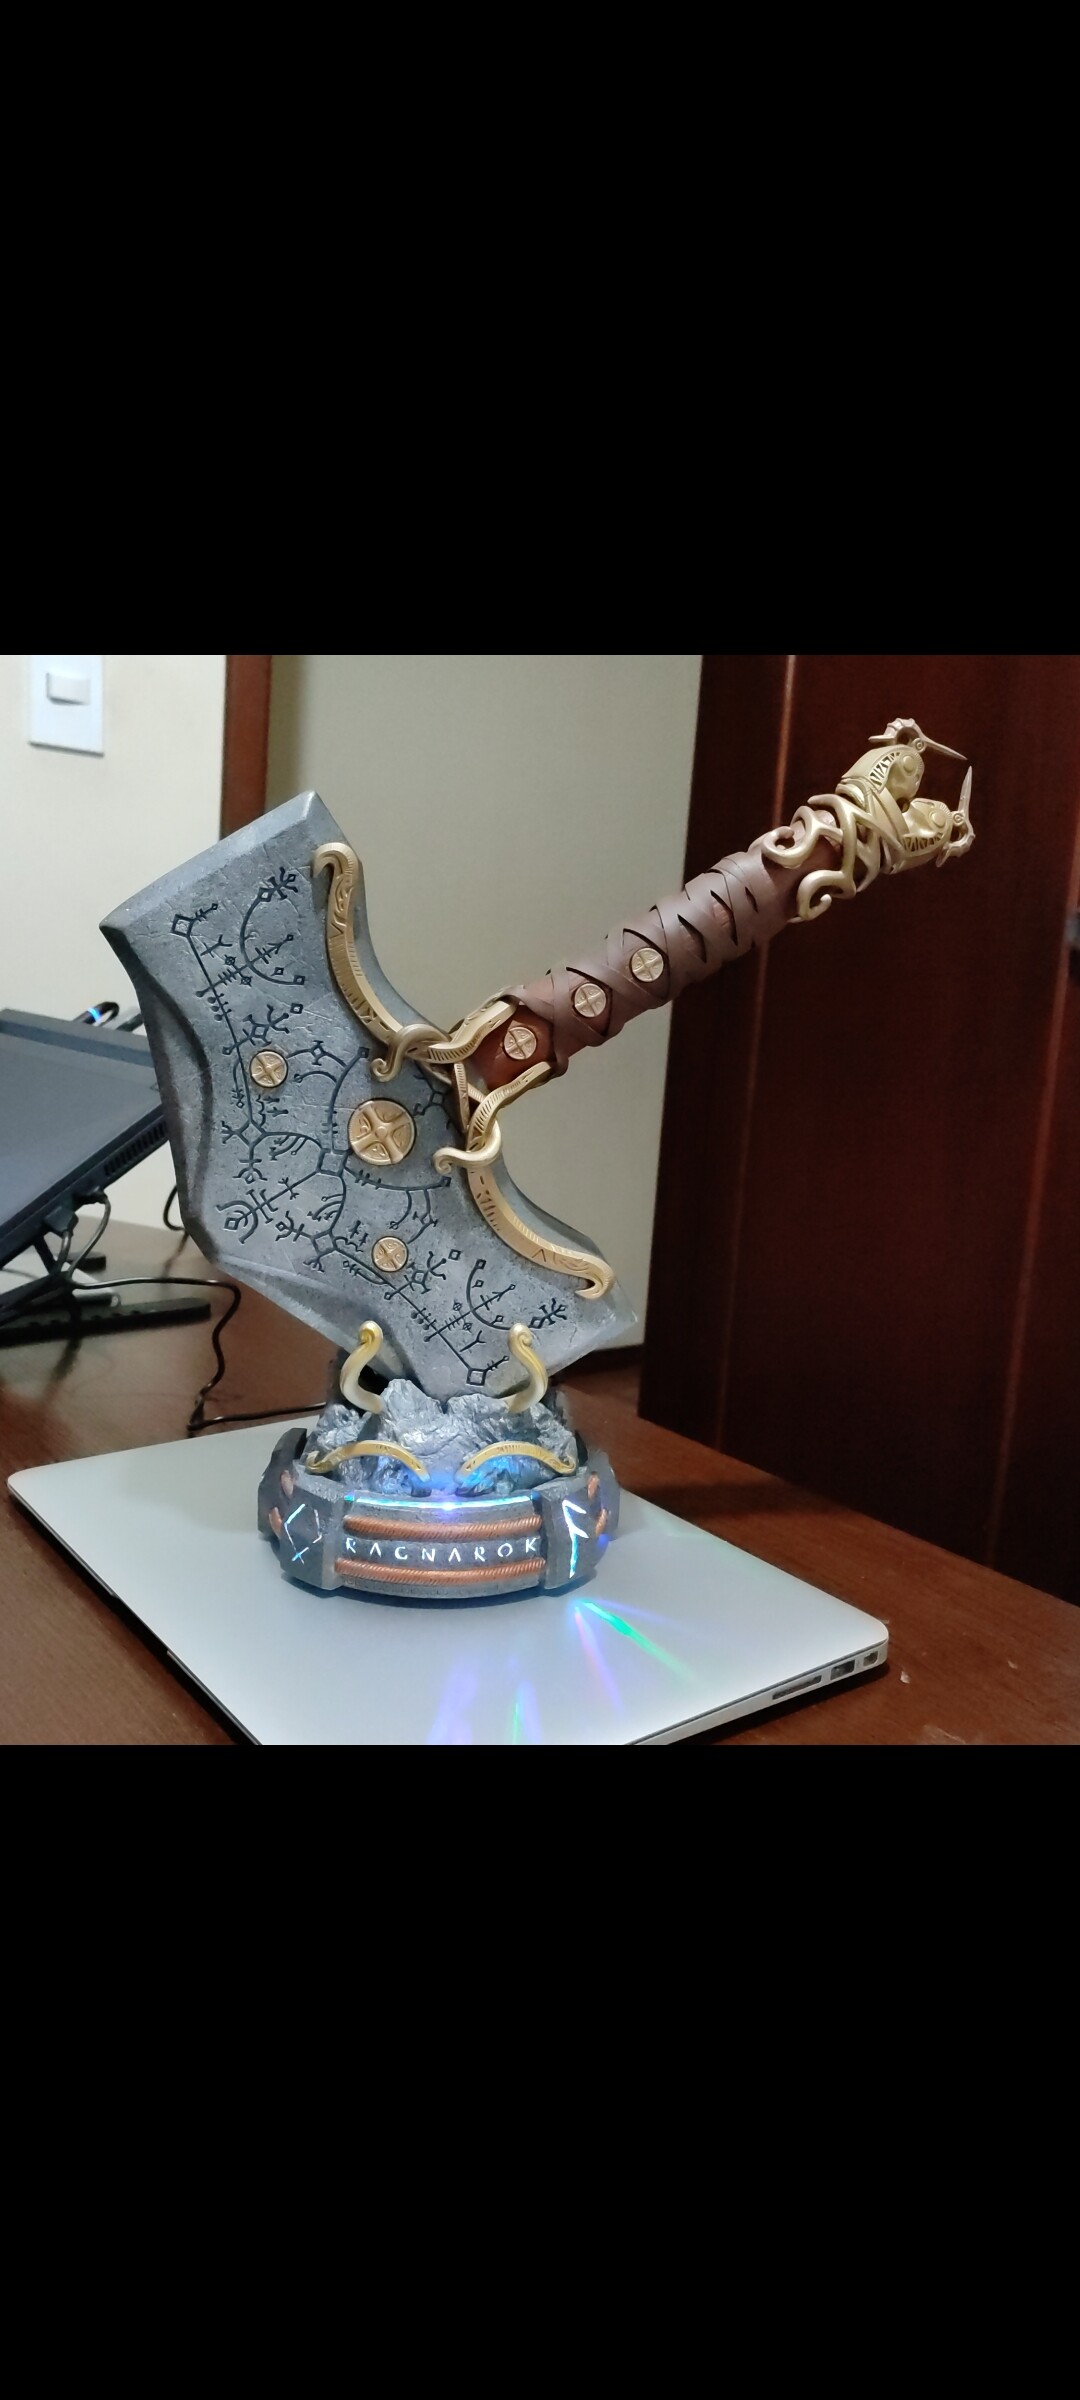 Fã de God of War: Ragnarok cria versão real do Mjolnir